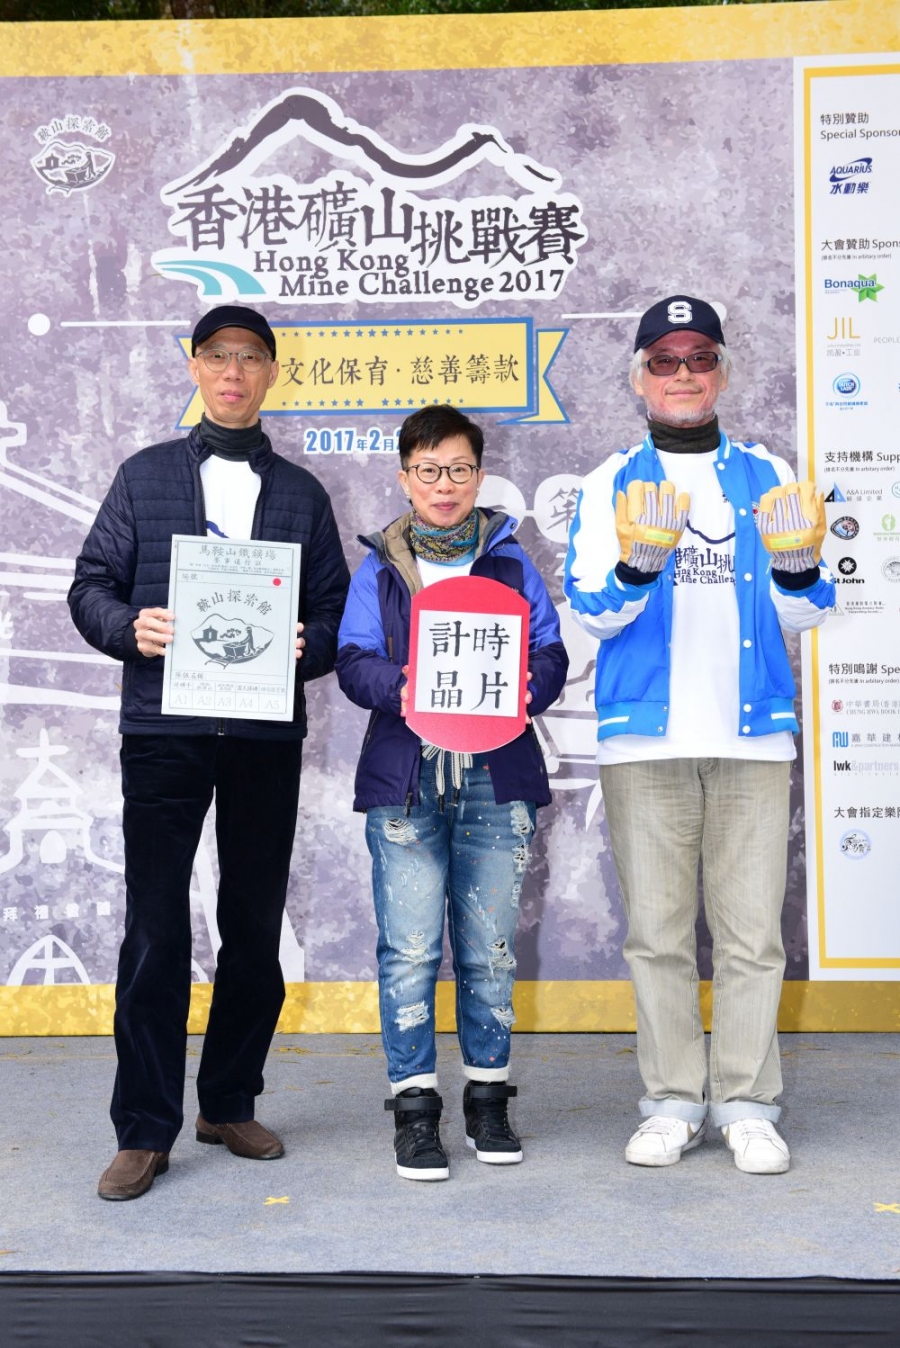 香港礦山挑戰賽2017